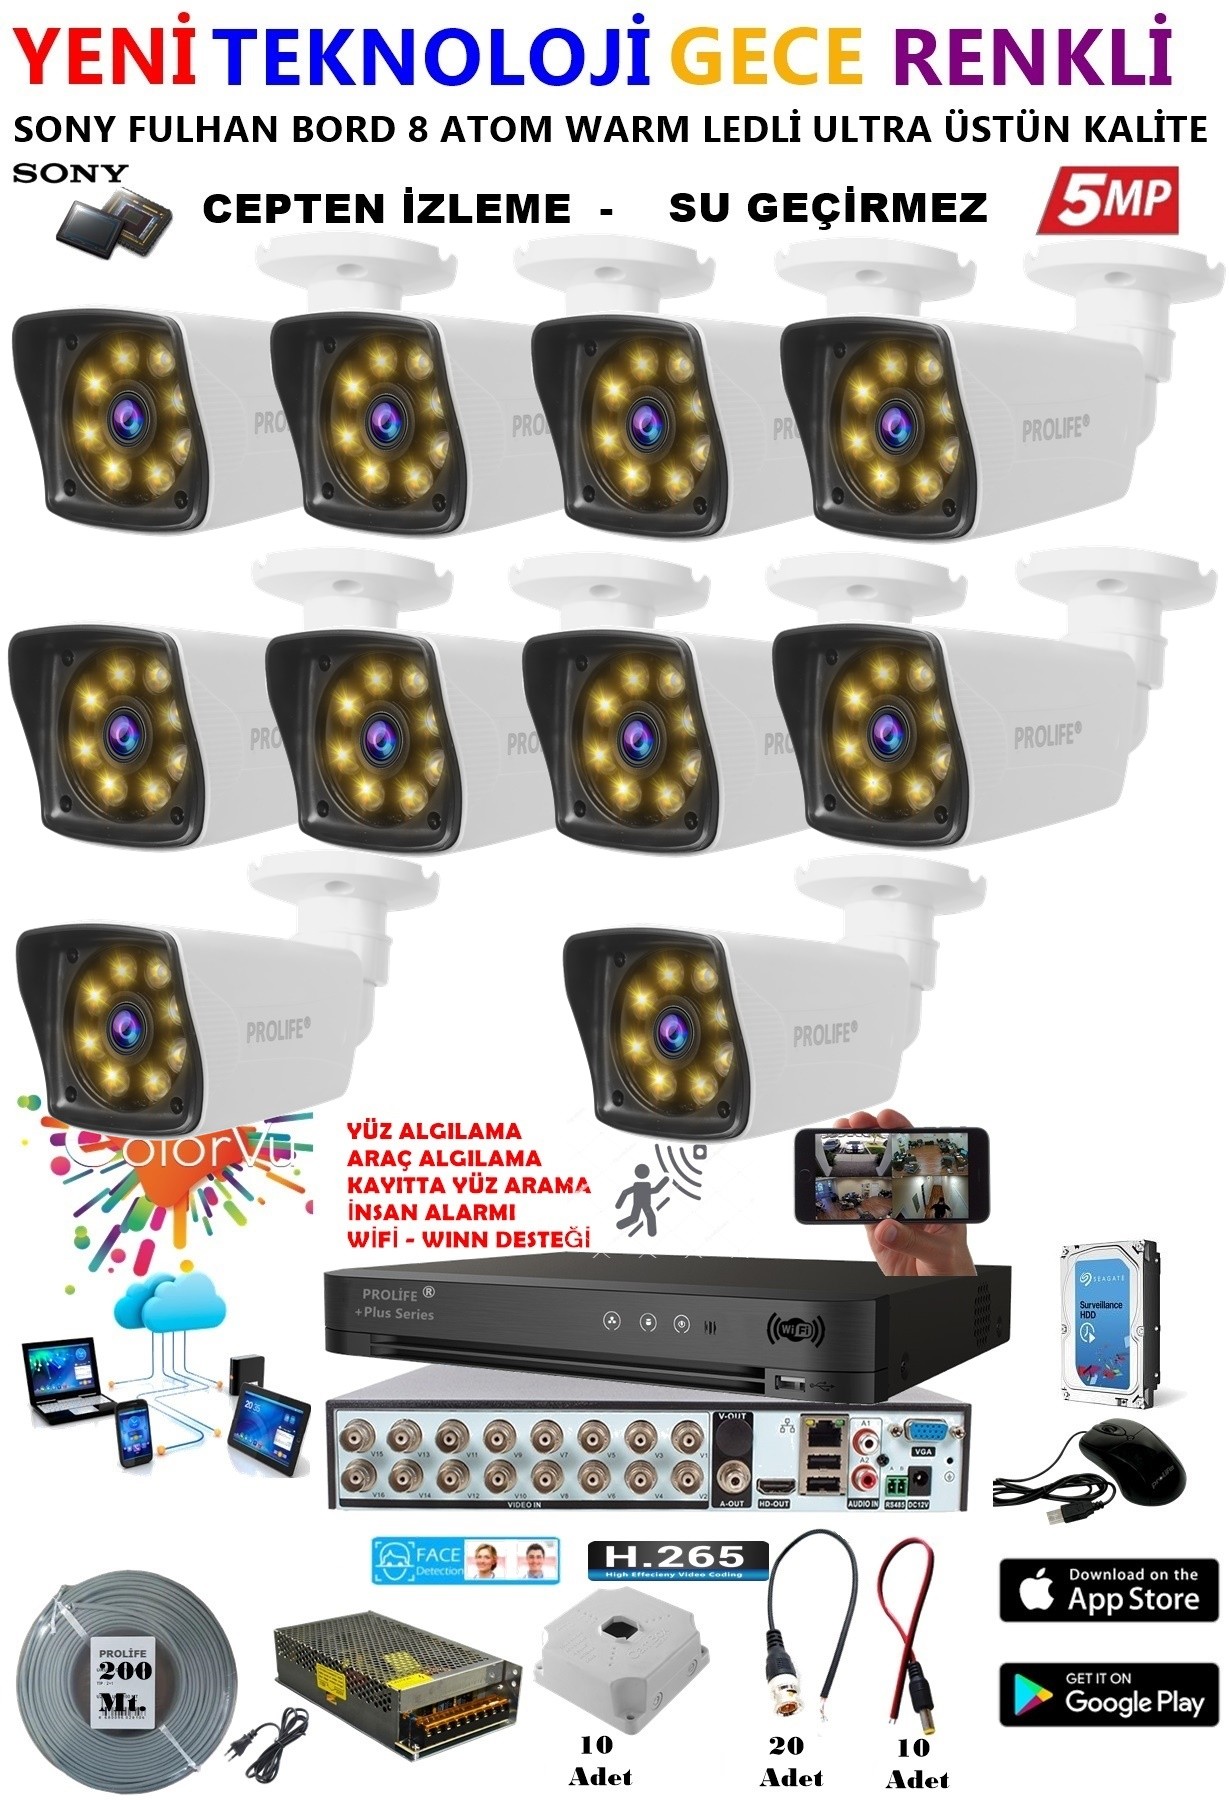 10 Kameralı 5 MP Gece Renkli Yapay Zeka Yüz ve Araç Algılamalı Olay Anı Bildirimli Kuruluma Hazır Kamera Seti